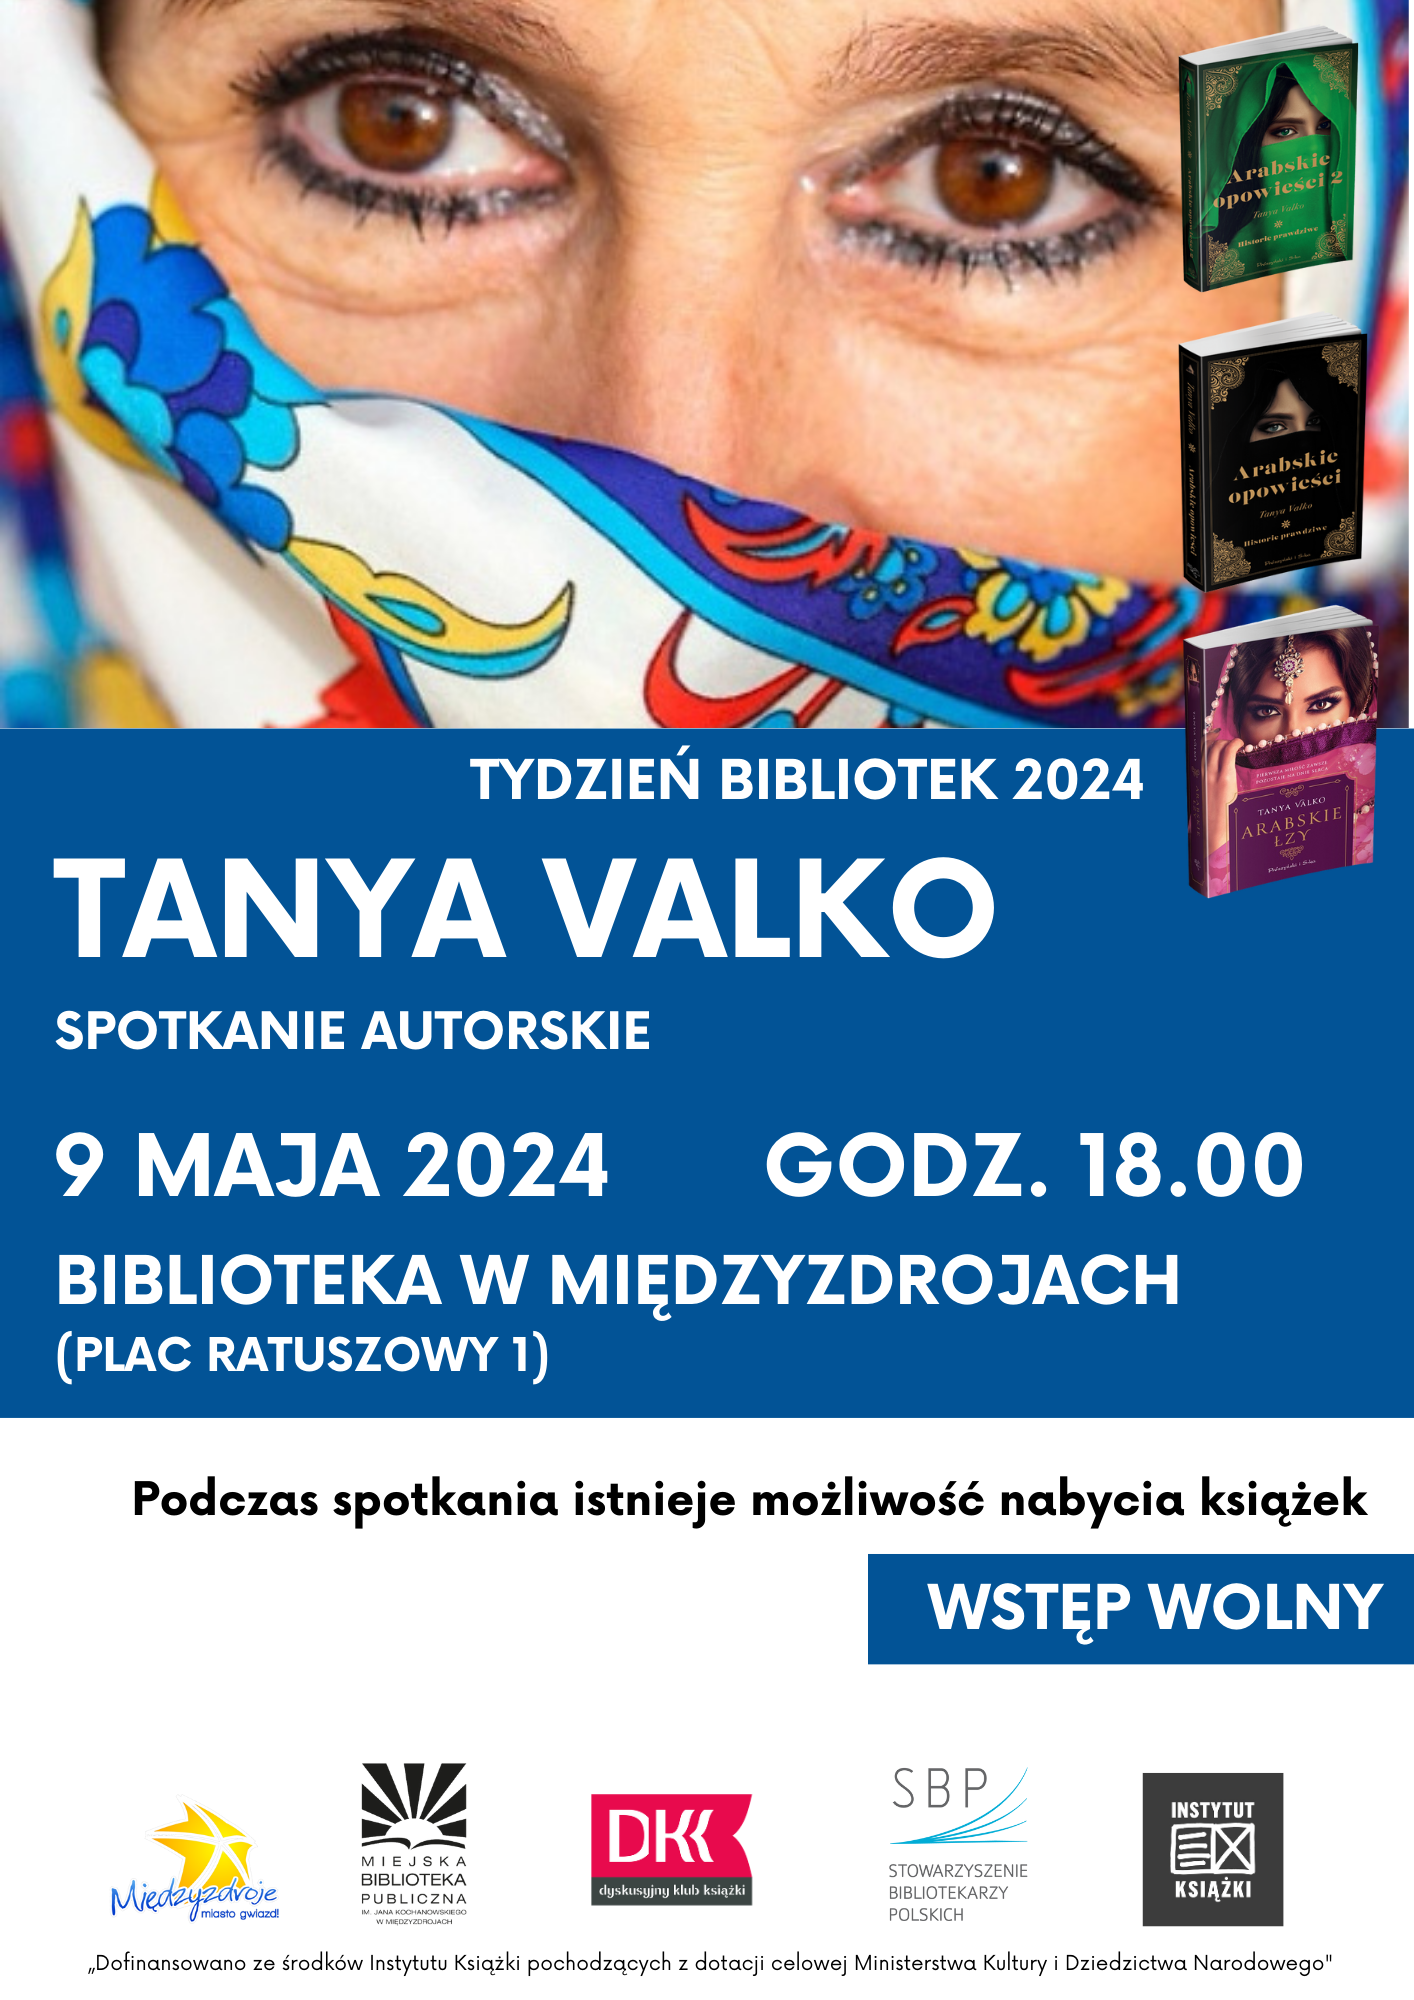 Spotkanie autorskie z Tanyą Valko w międzyzdrojskiej bibliotece - 9 maja 2024 r. 